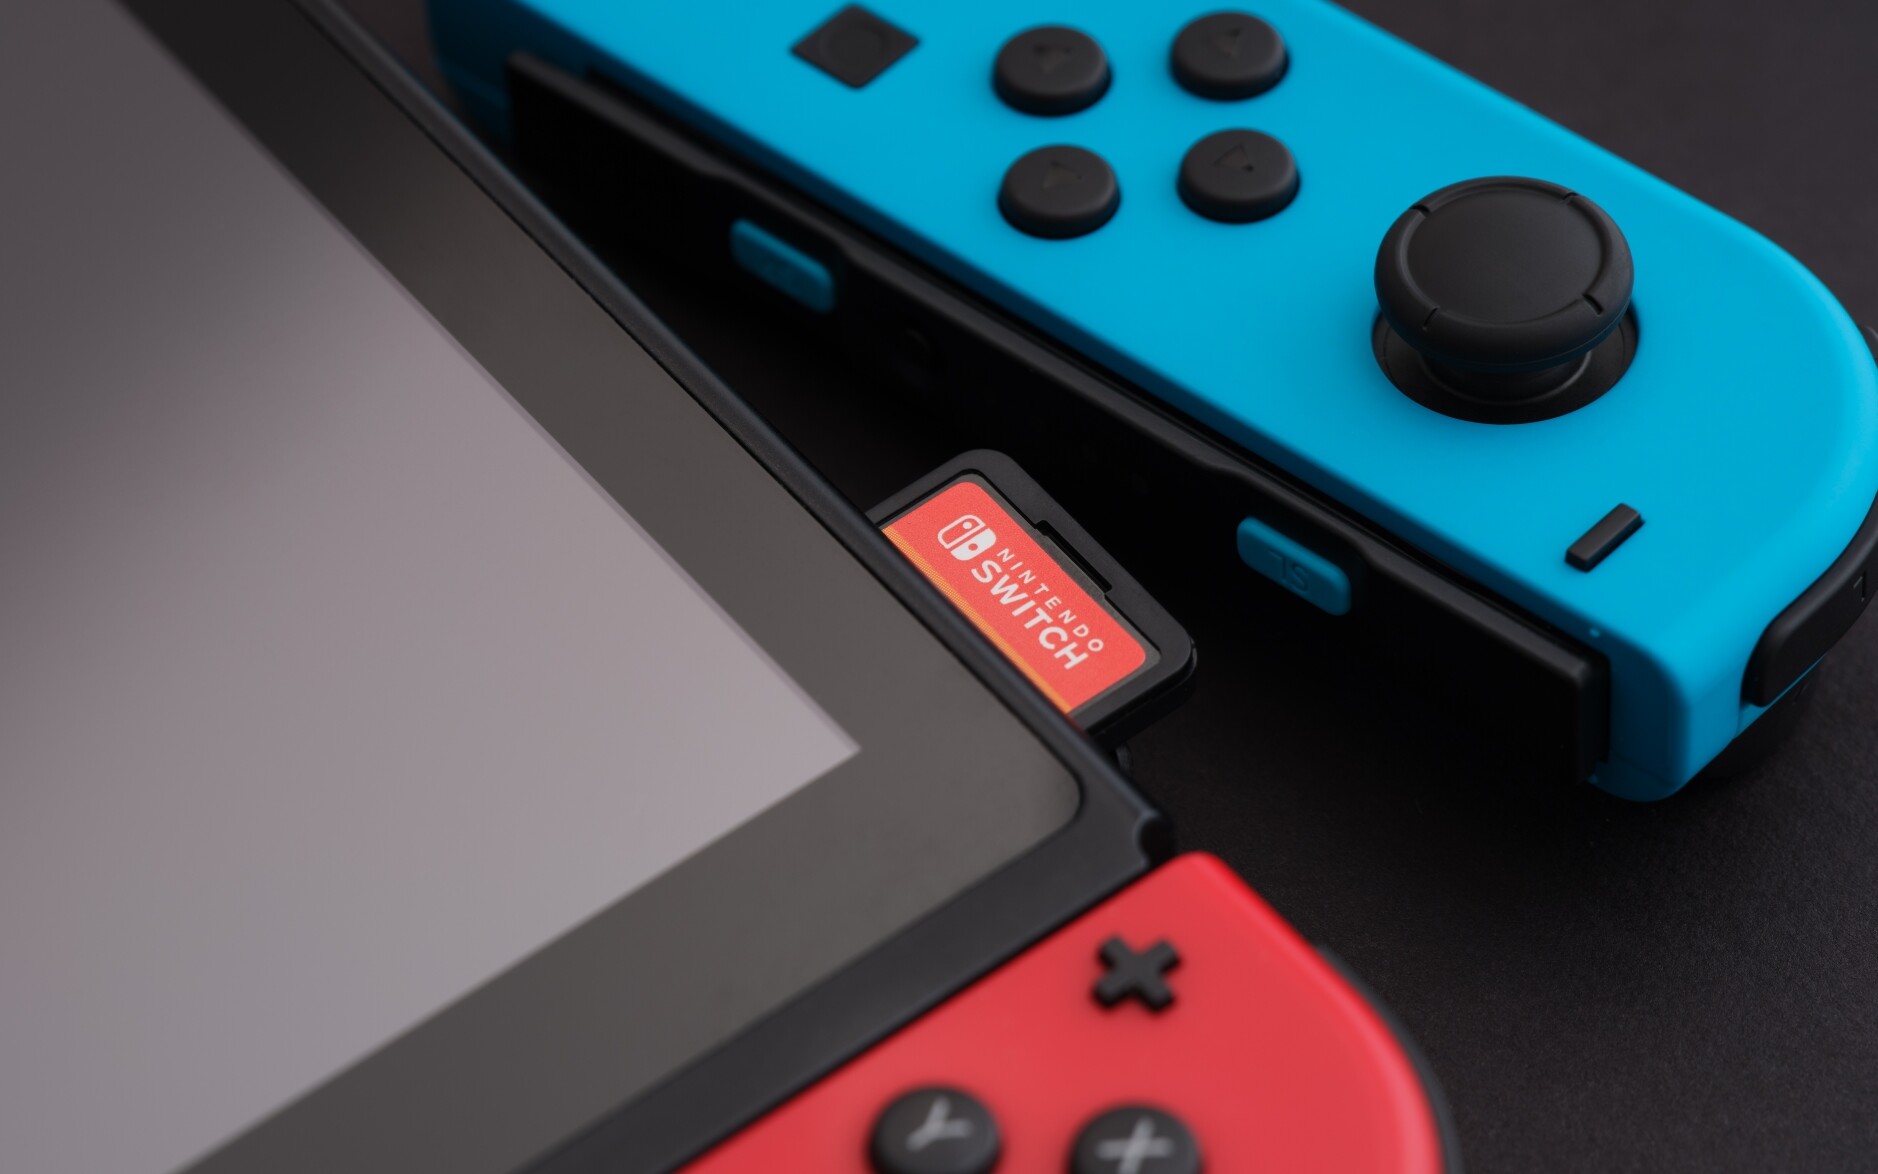 Sucesor de Nintendo Switch con retrocompatibilidad avanzada.  Se supone que la nueva consola mejorará los juegos más antiguos.